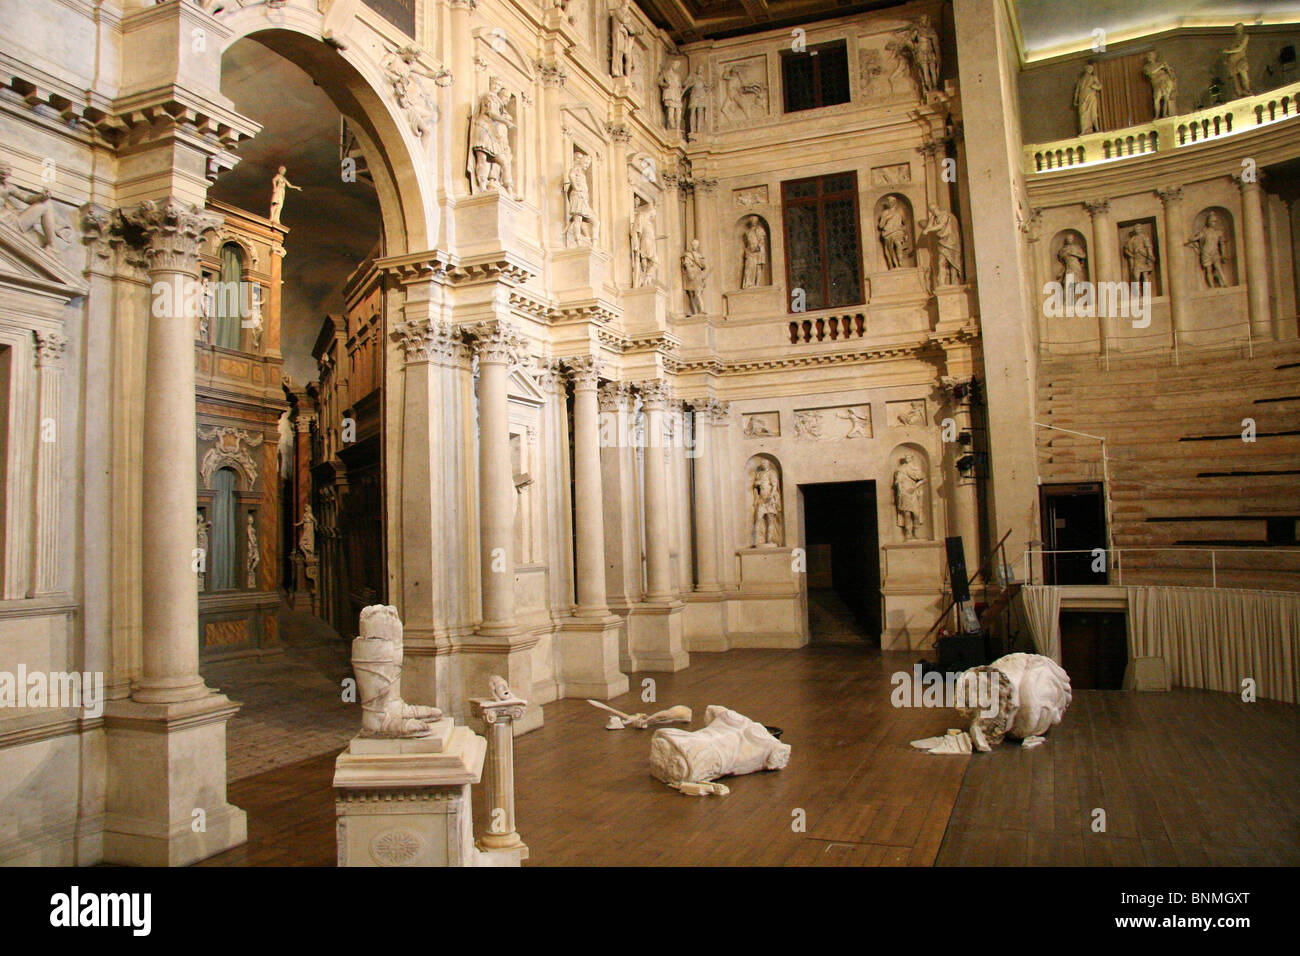 Italien Vicenza Teatro Olimpico Palladio im inneren Fähigkeiten Kunstmuseum Stockfoto